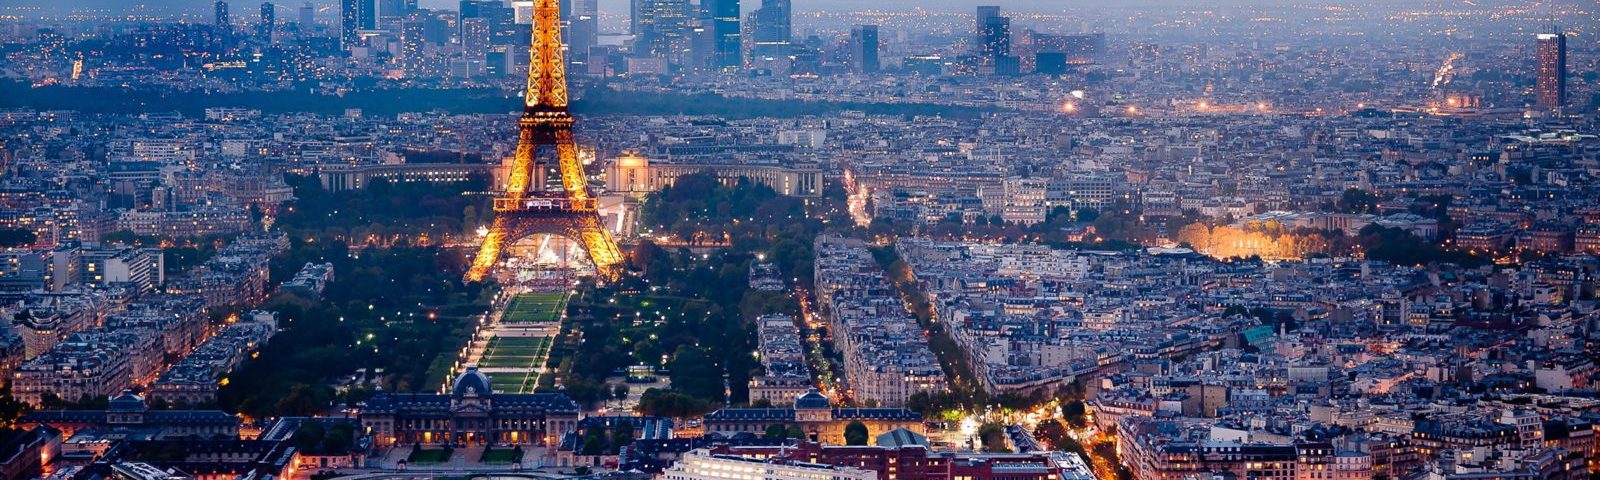 Visitare Parigi, consigli da seguire per visitare la Capitale francese